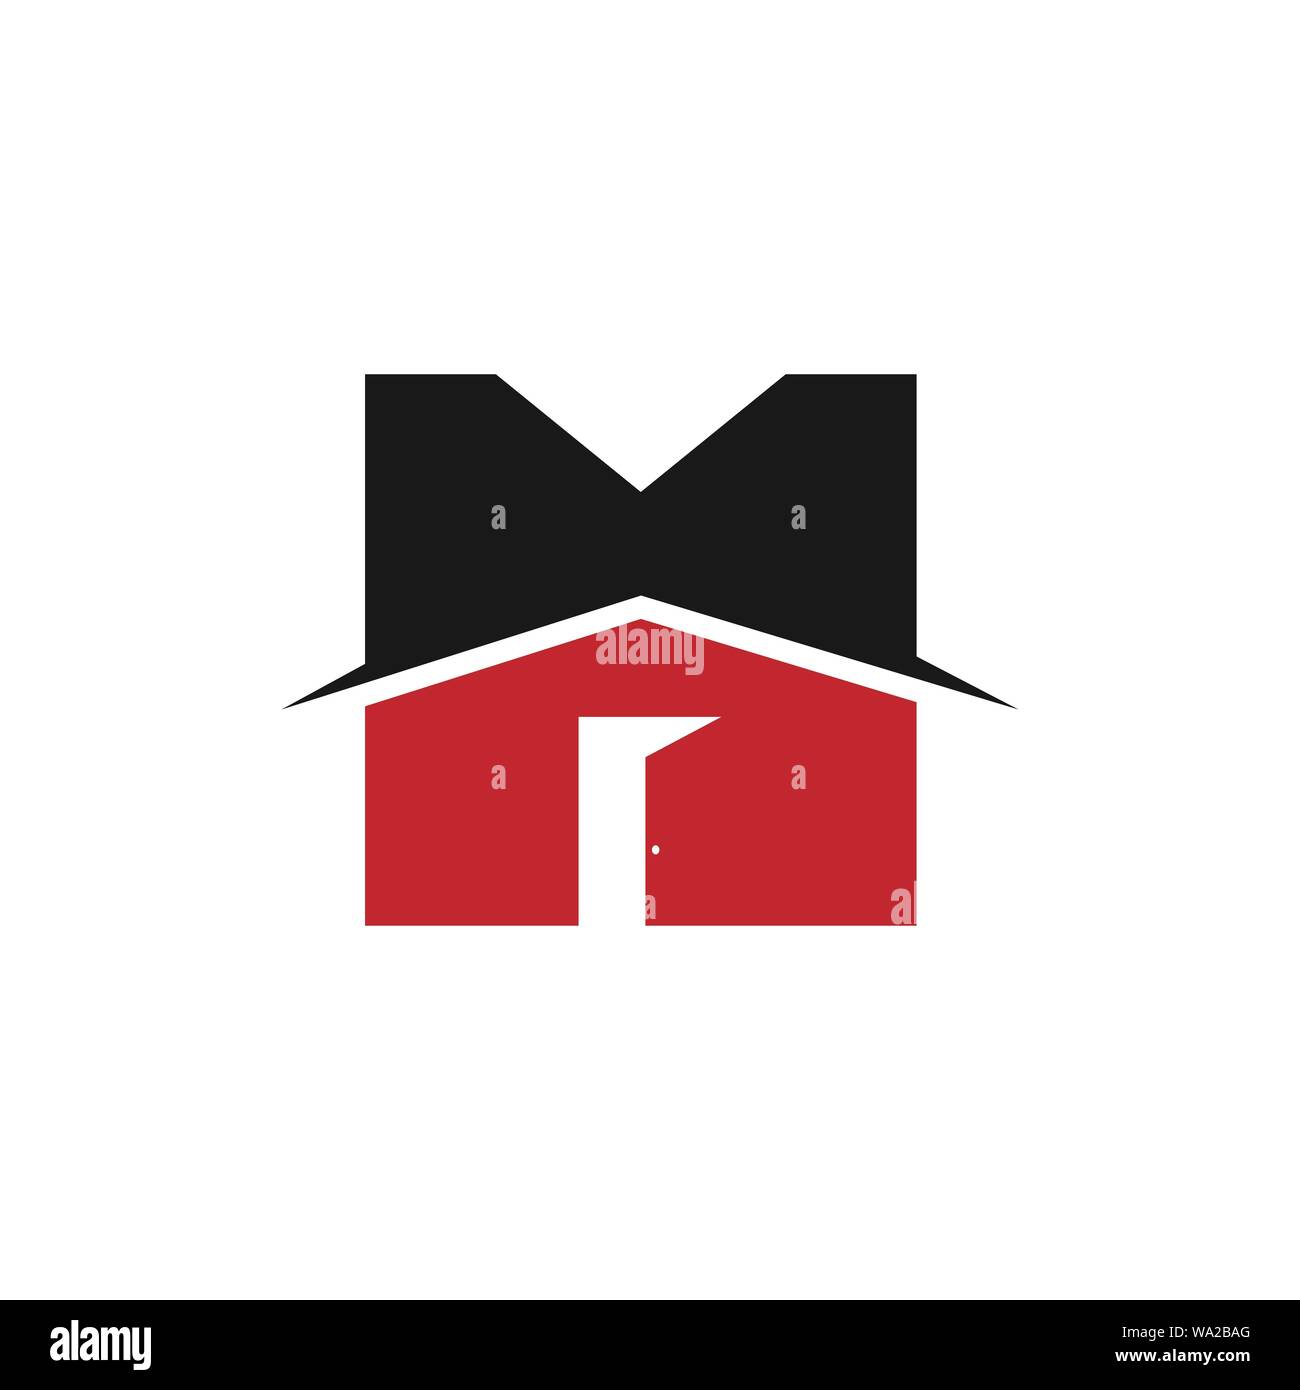 Iniziale della lettera M realty o proprietà immobiliari logo azienda design logo della casa con la lettera M segno. Modello di logo Illustrazione Vettoriale